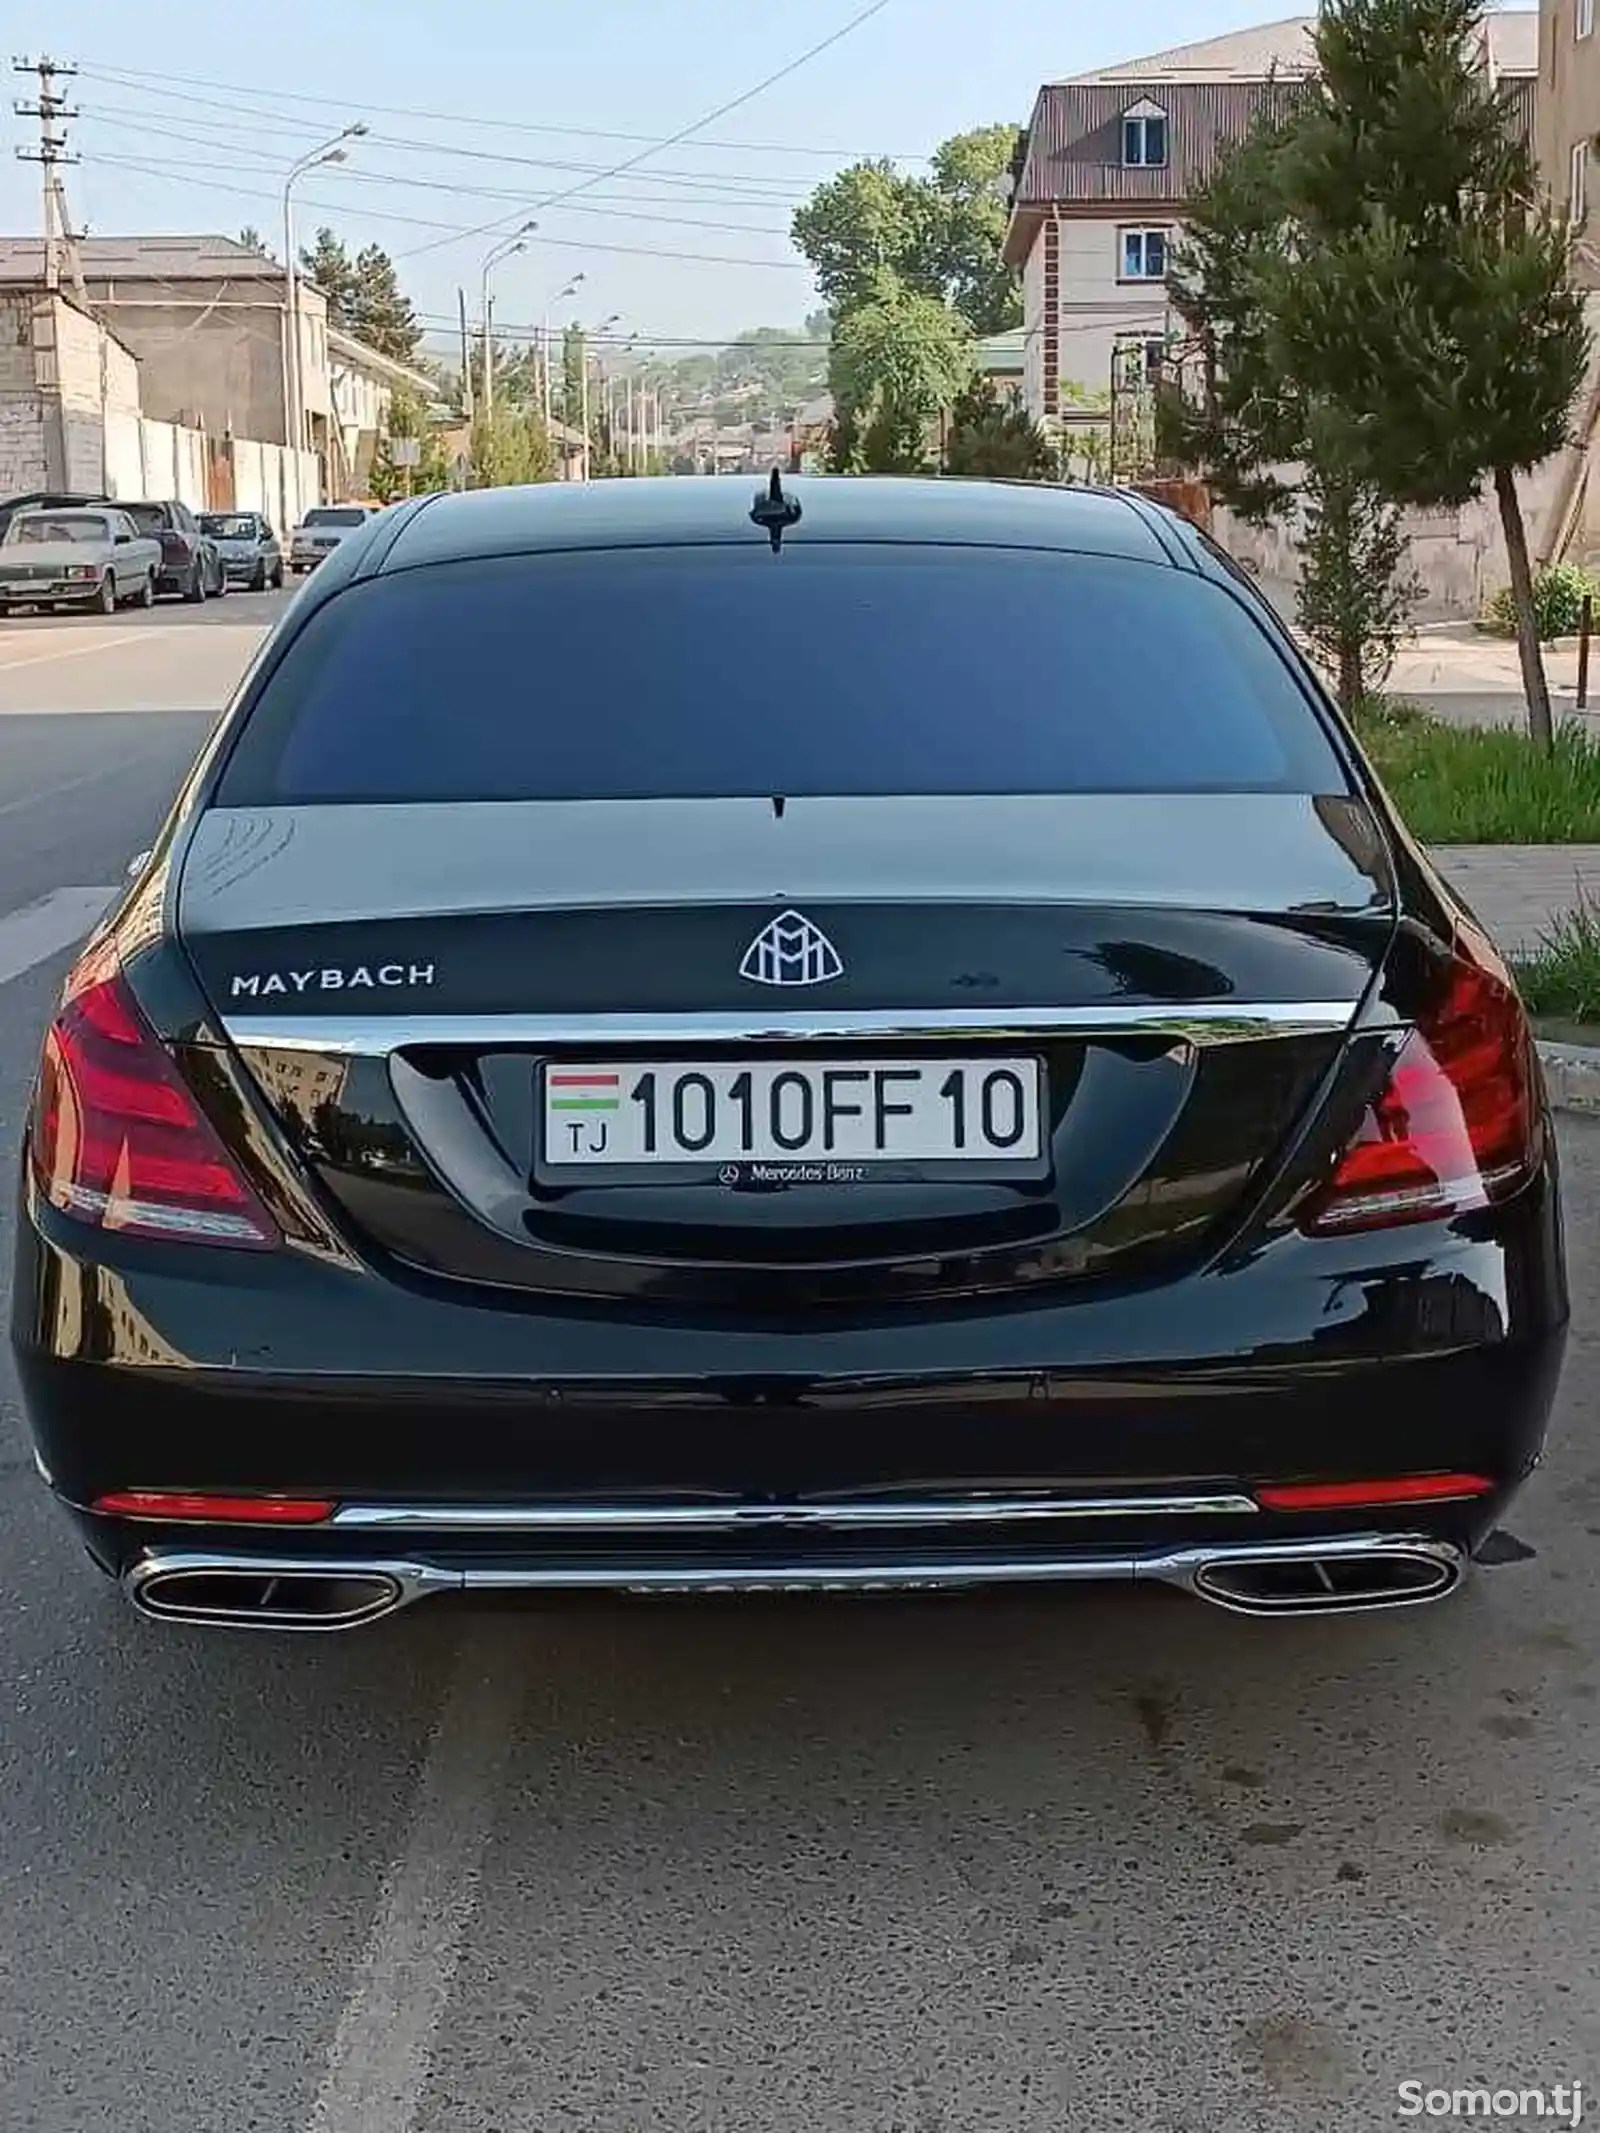 Mercedes-Benz S class, 2014-2